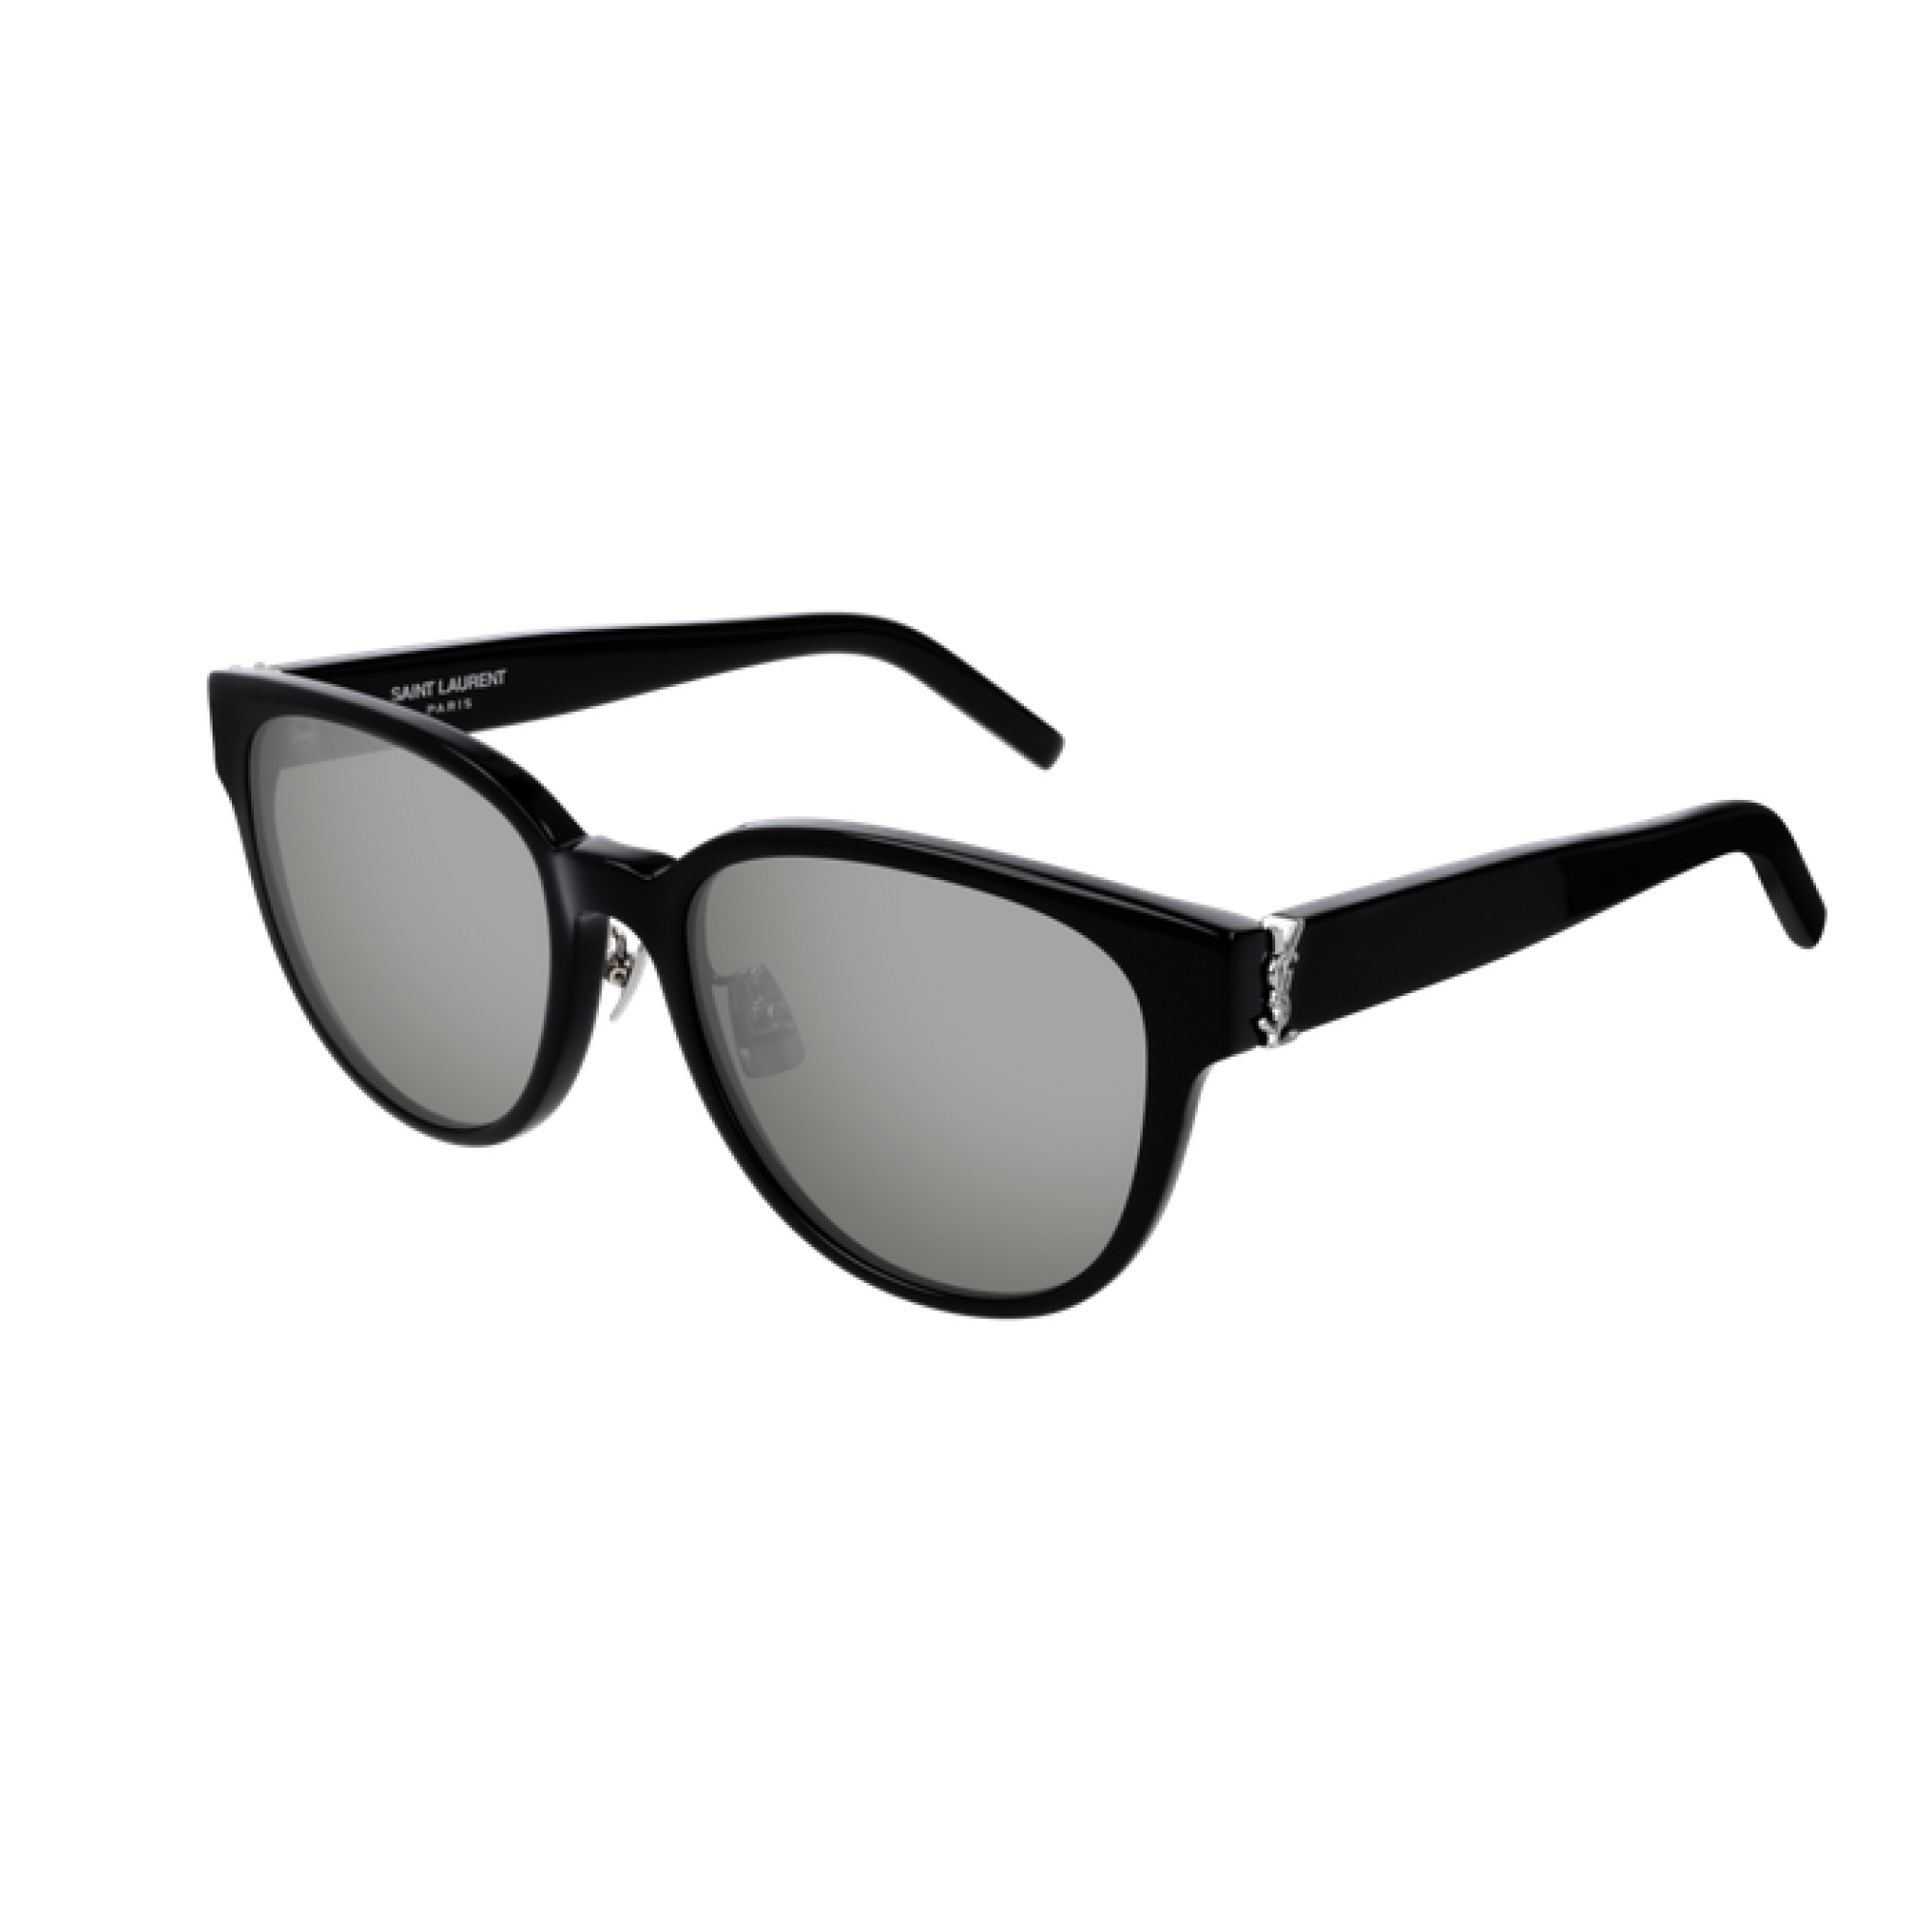 Saint Laurent SL M36/K - 002 Black | Sunglasses Woman